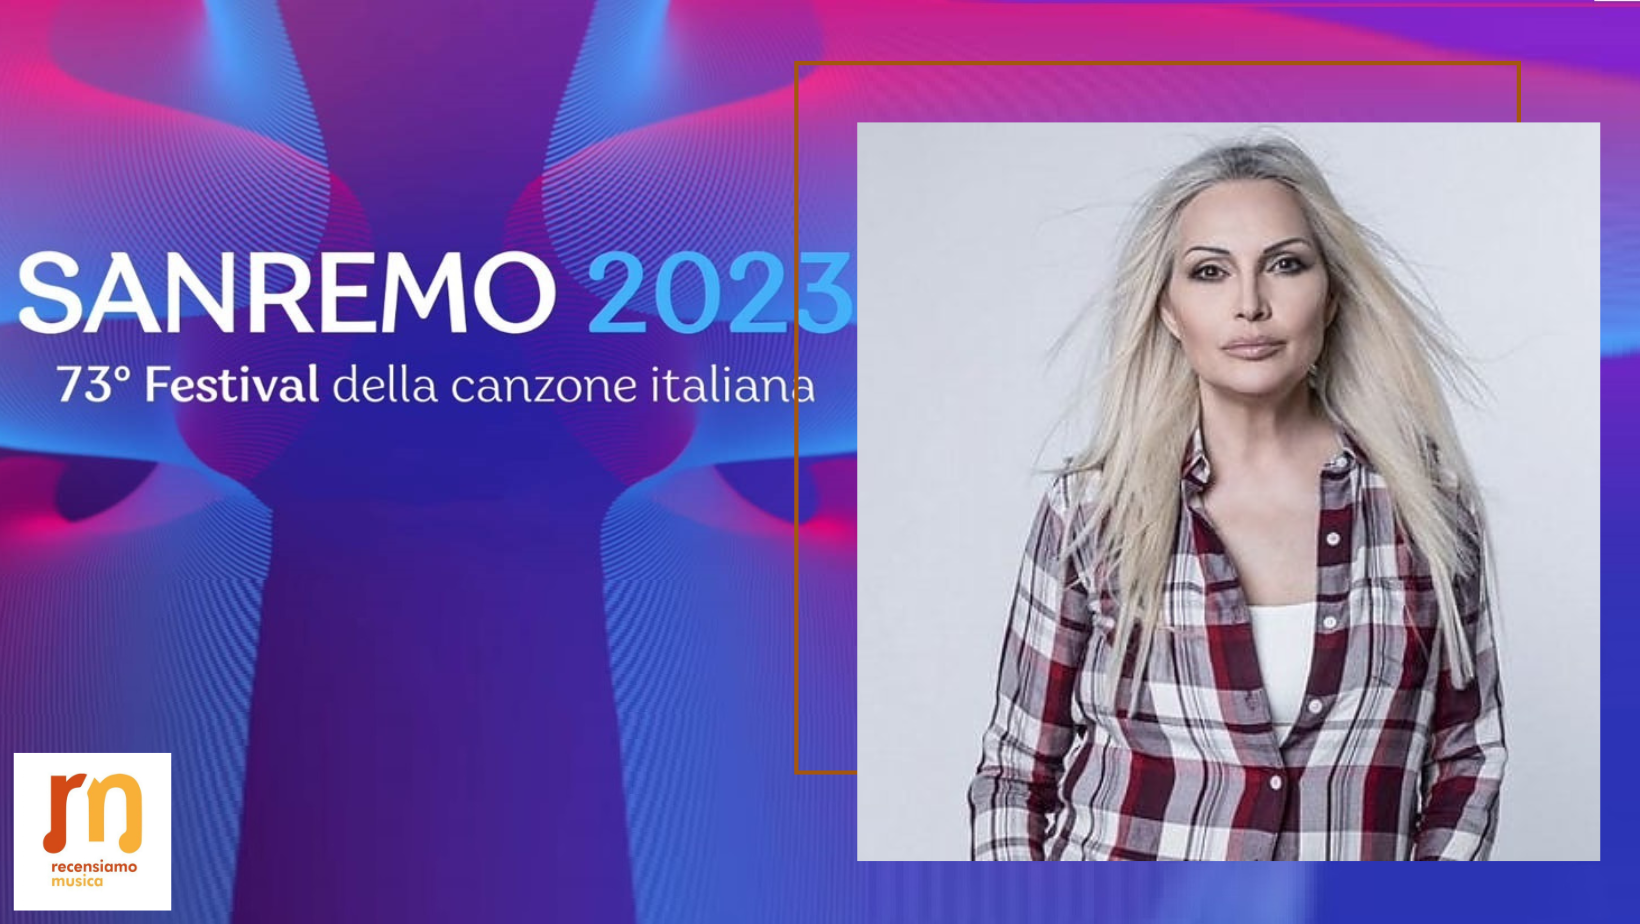 Anna Oxa Sanremo 2023